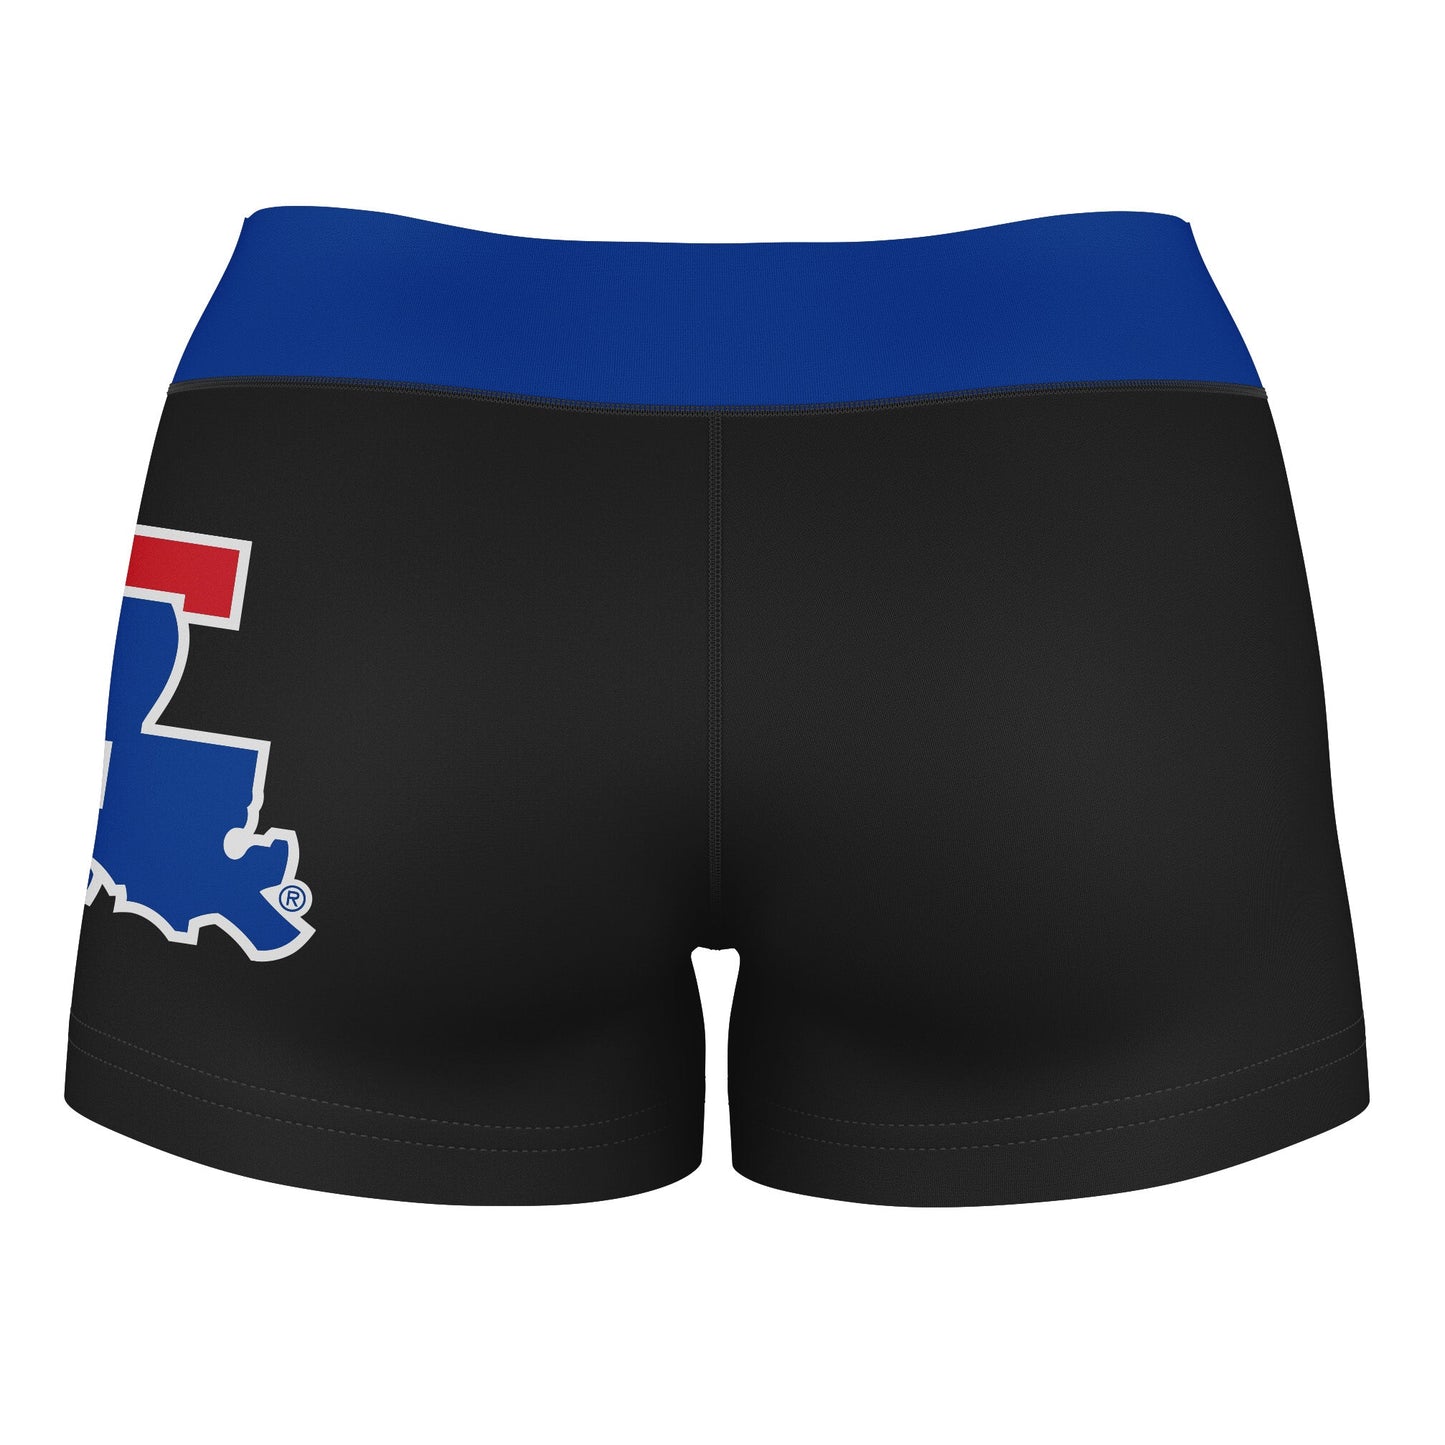 Louisiana Tech Bulldogs Vive La Fete Logo on Thigh & Waistband Black & Blue Women Yoga Booty Workout Shorts 3.75 Inseam" - Vive La F̻te - Online Apparel Store